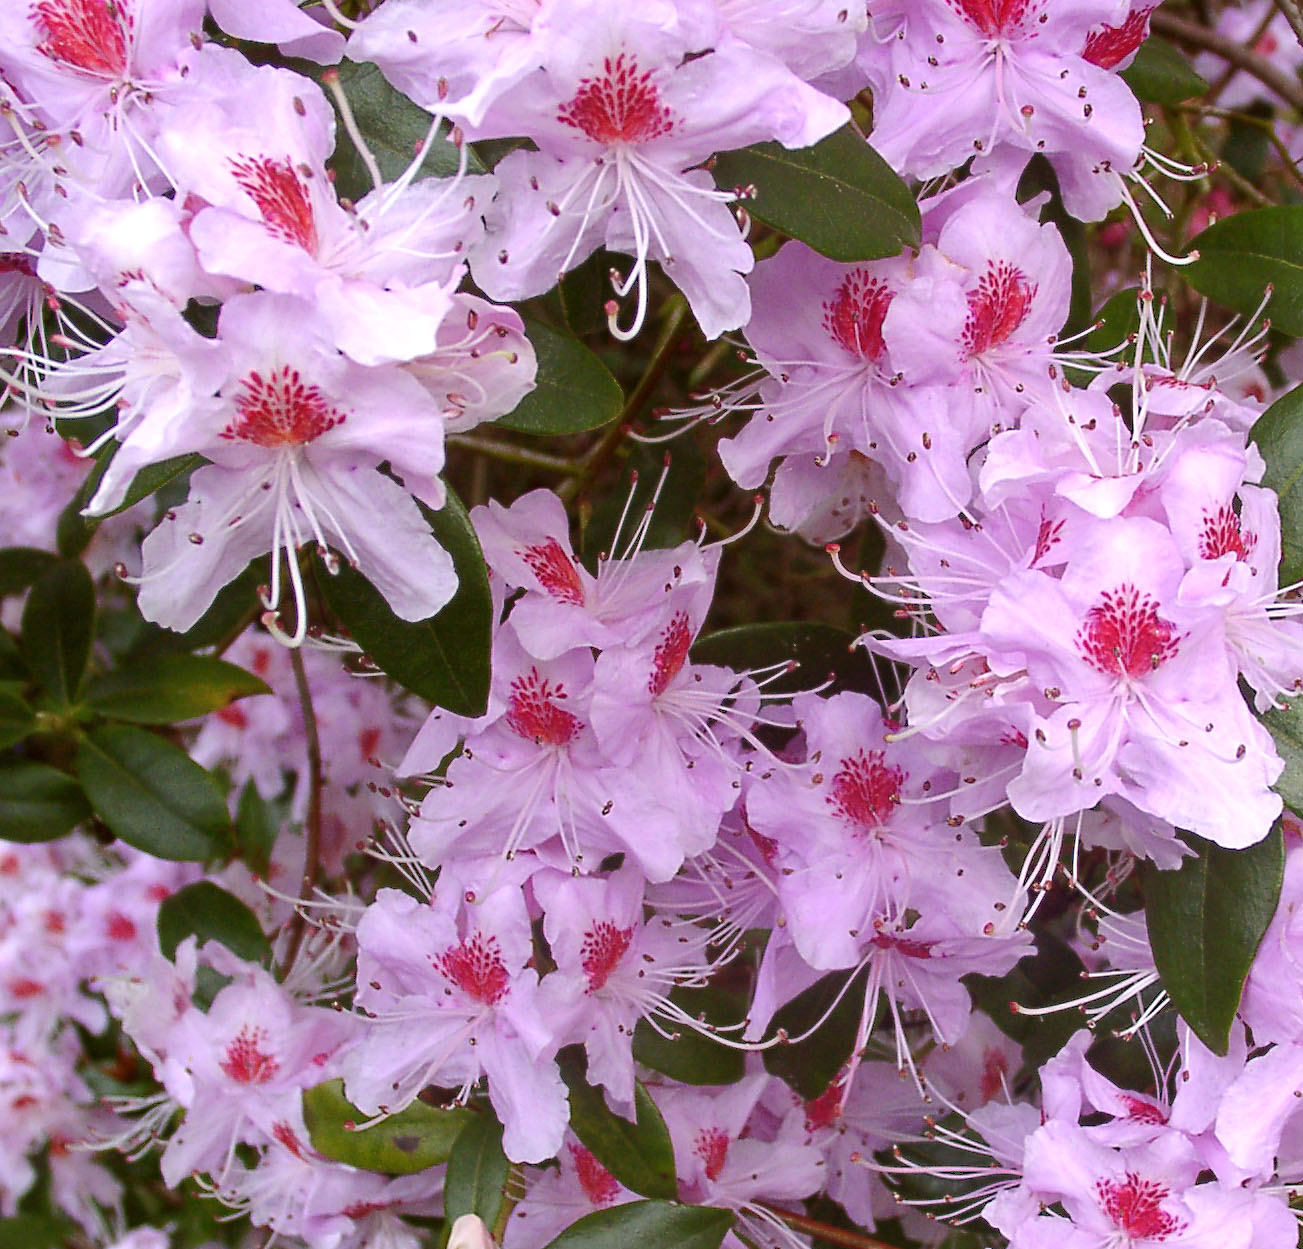 DAVIDSONIANUM CAERHAYS BLOTCHED form. Rhododendron Rhododendron Triflora Cinnabarina